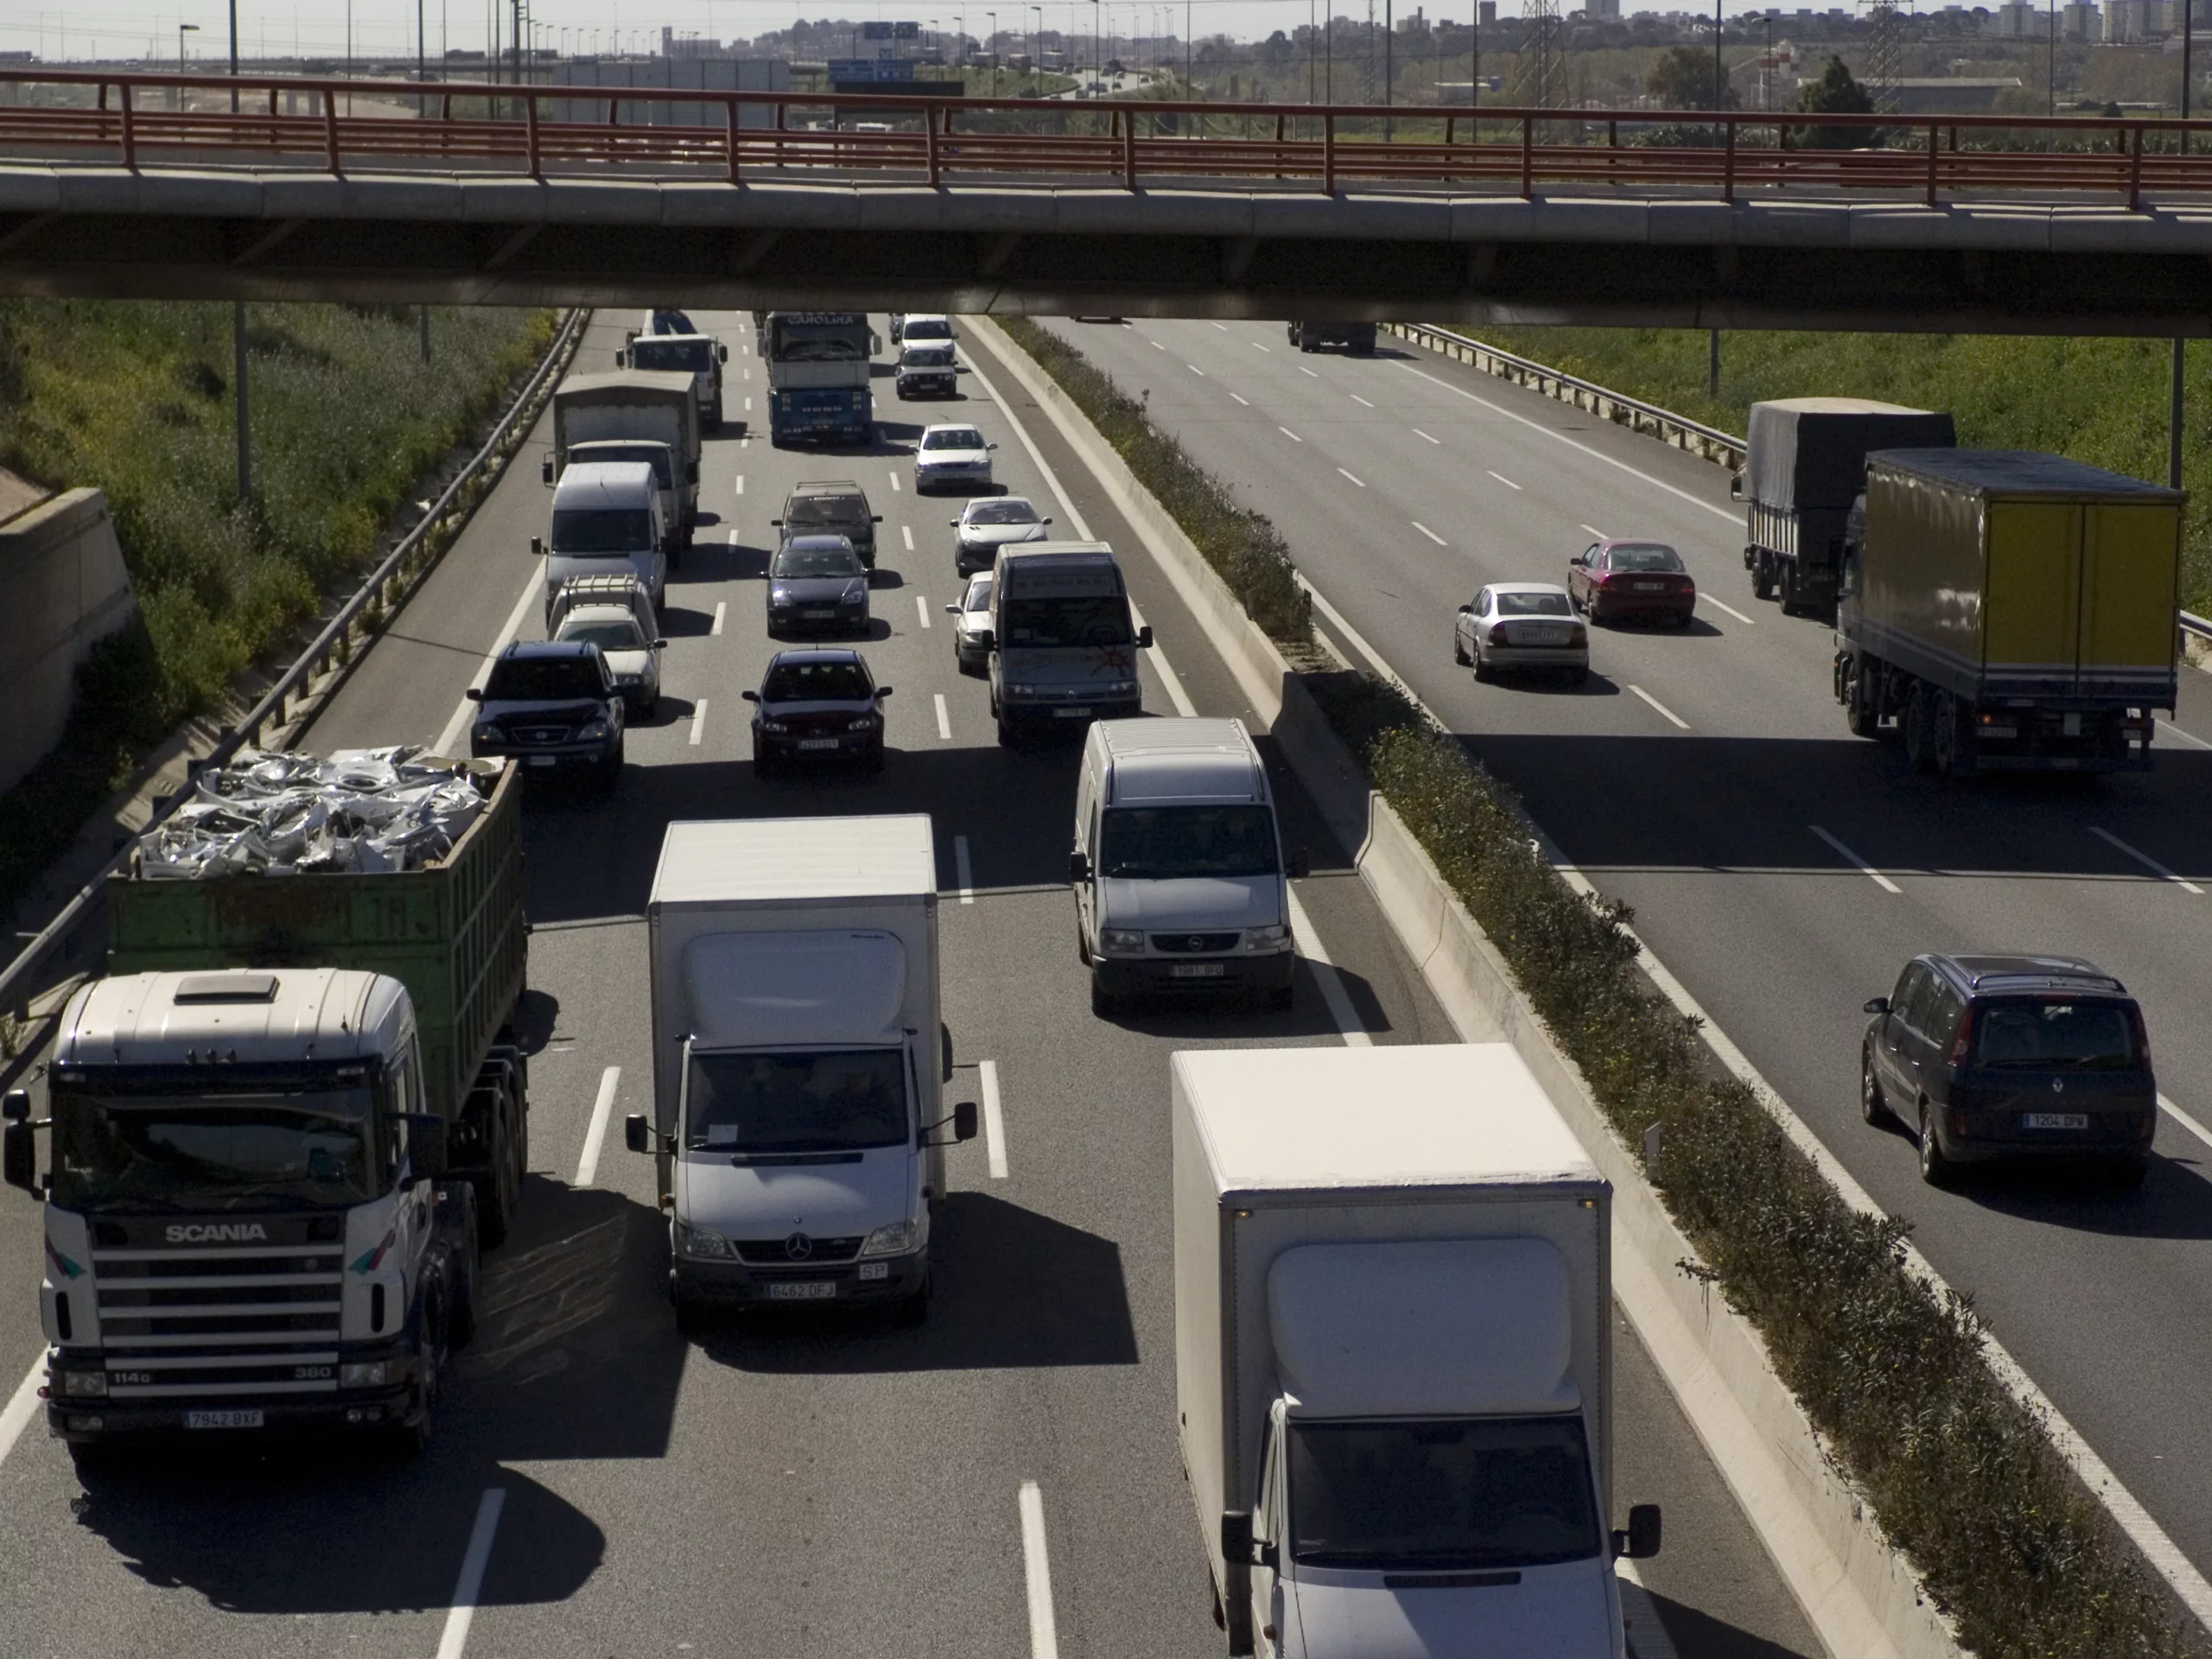 L’augment de la capacitat de càrrega dels camions i un pla de suport al transport, eines de competitivitat